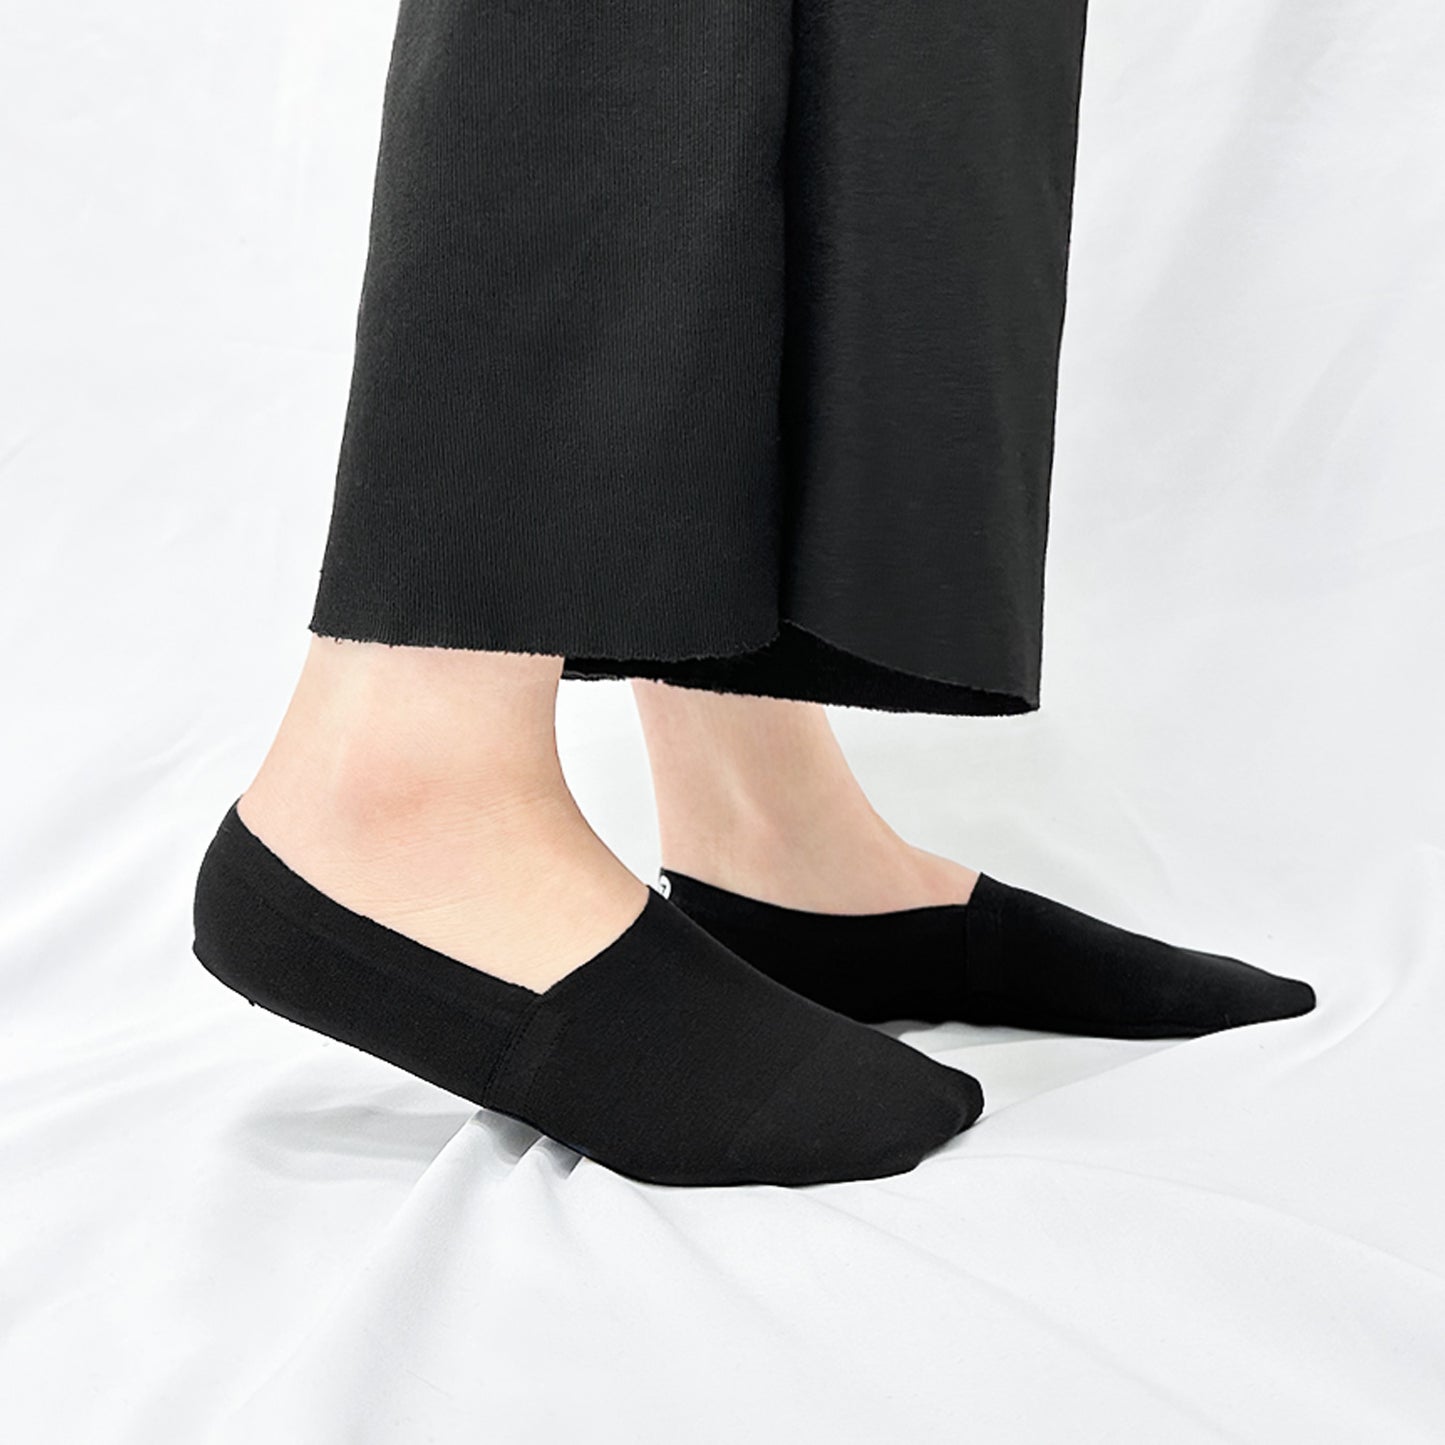 Unisex Women & Men's No Show Non Slip Premium Socks - Black